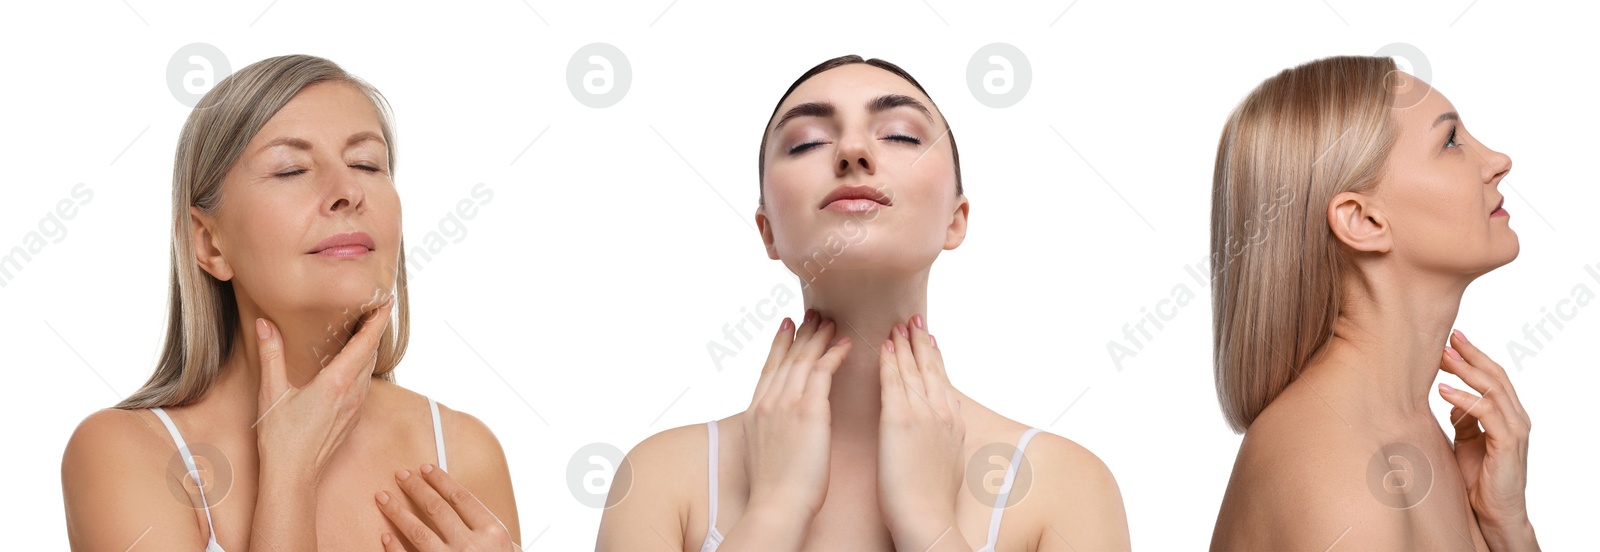 Image of Women touching their necks on white background, set of photos